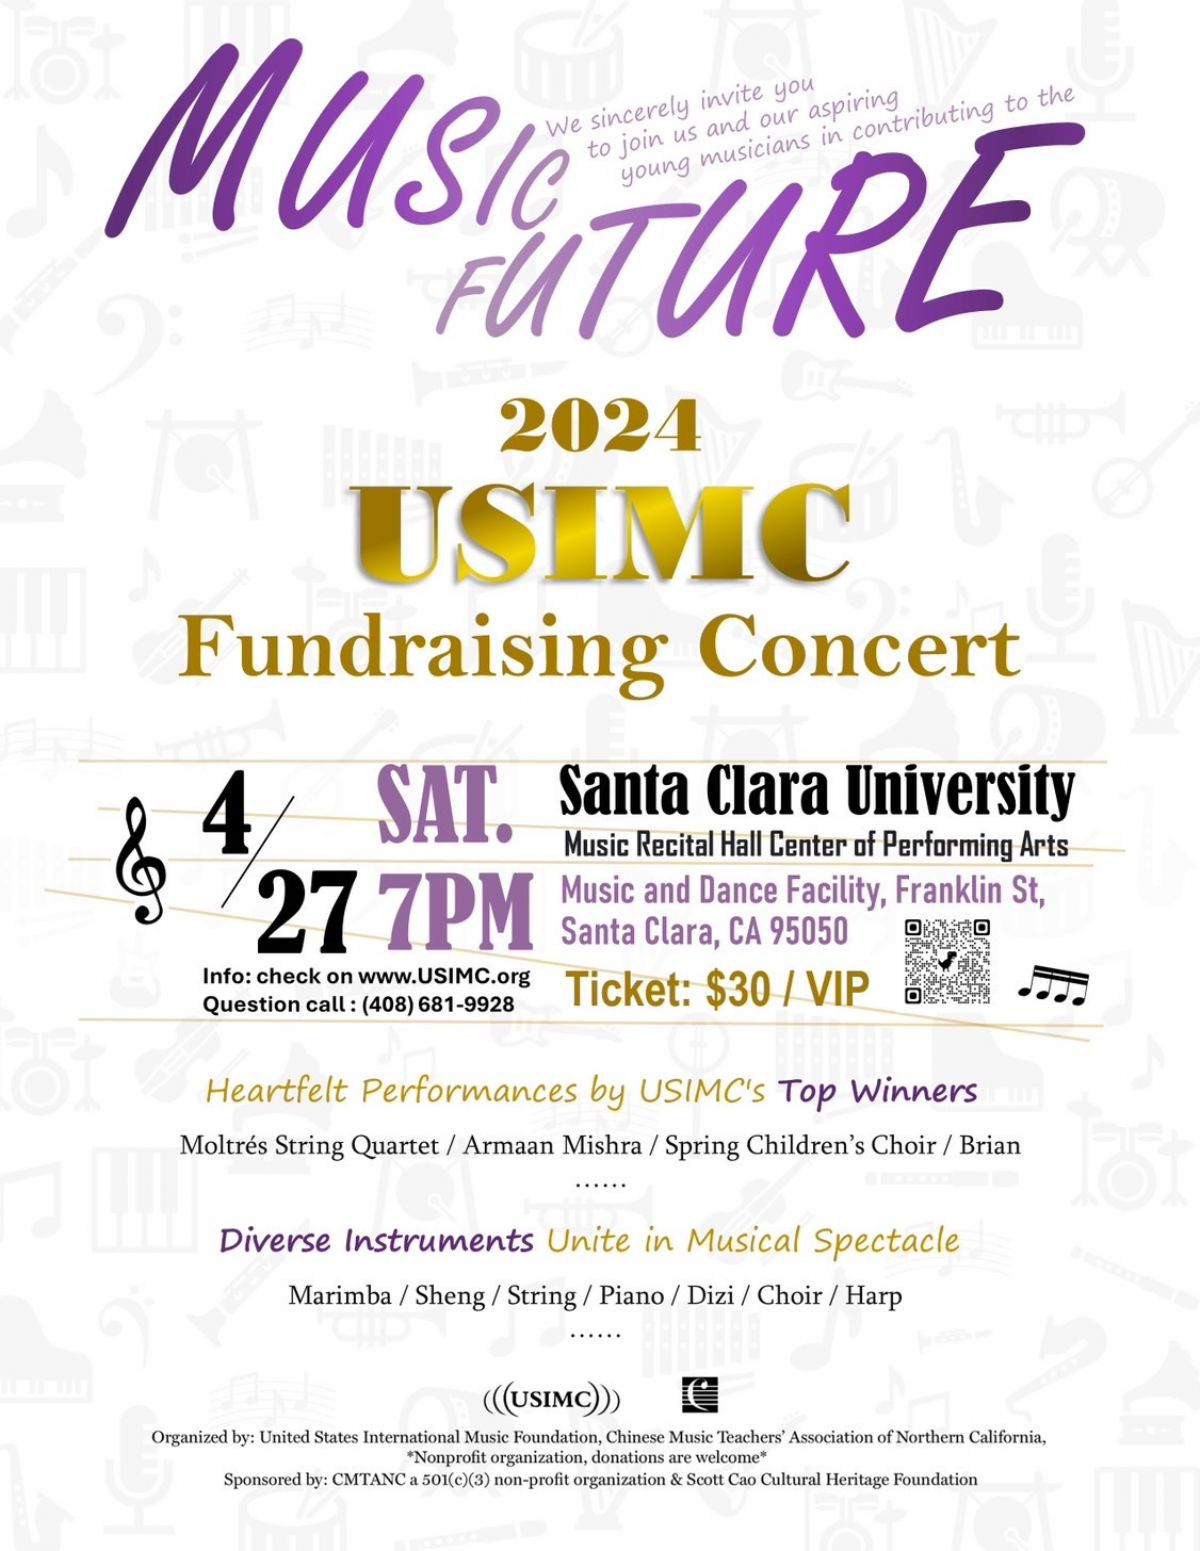 USIMC Fundraising Concert